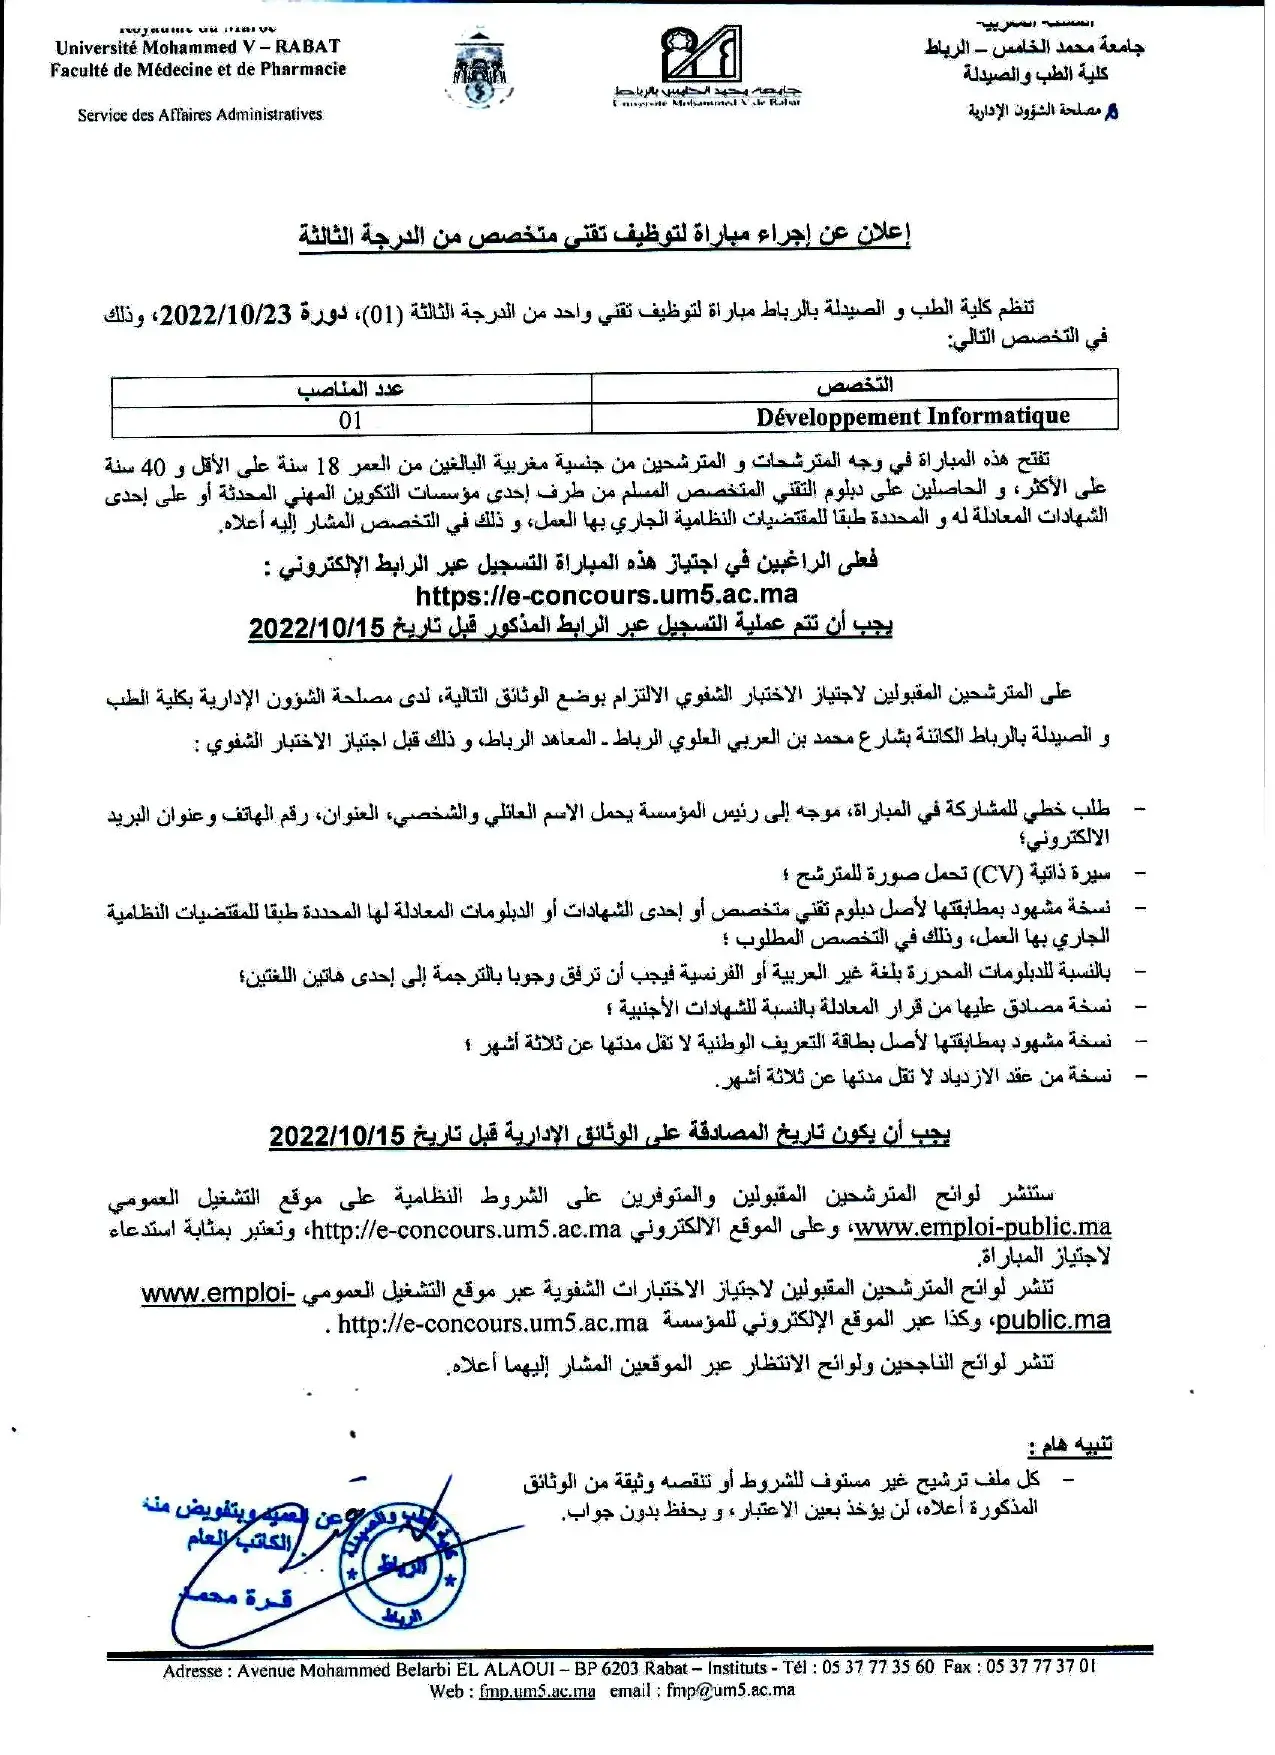 Concours de recrutement Université Mohammed V 2022